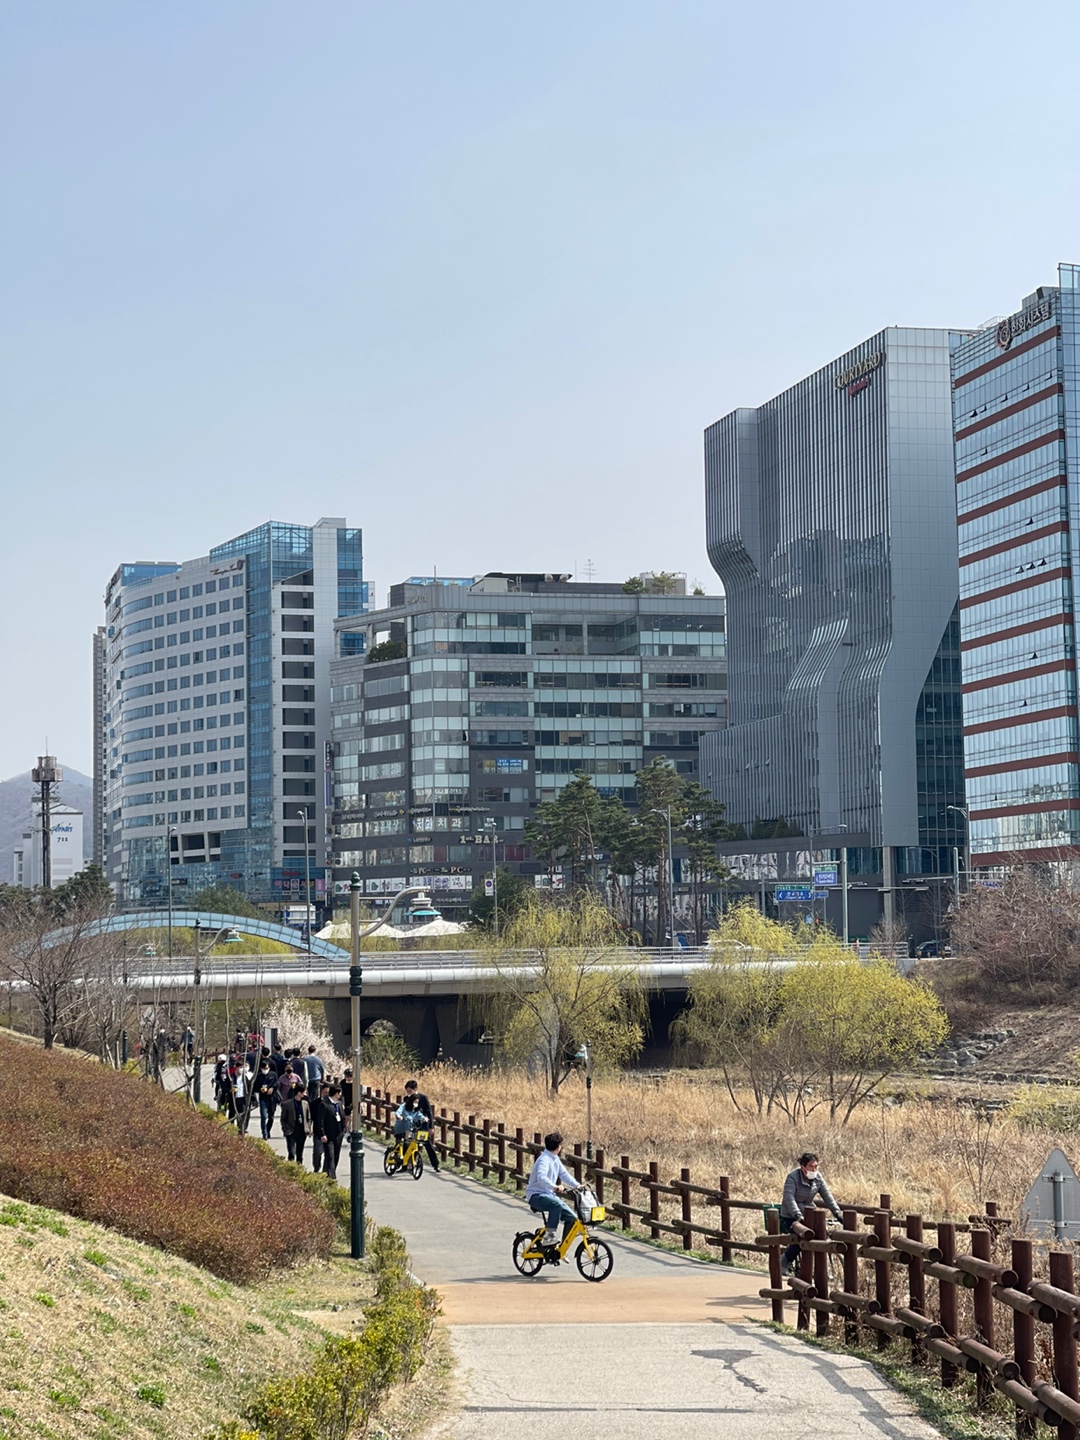 3월 19일 판교역 인근의 회사원들은 점심시간을 이용해 개천 주변을 따라 산책을 하거나 자전거를 탄다. 